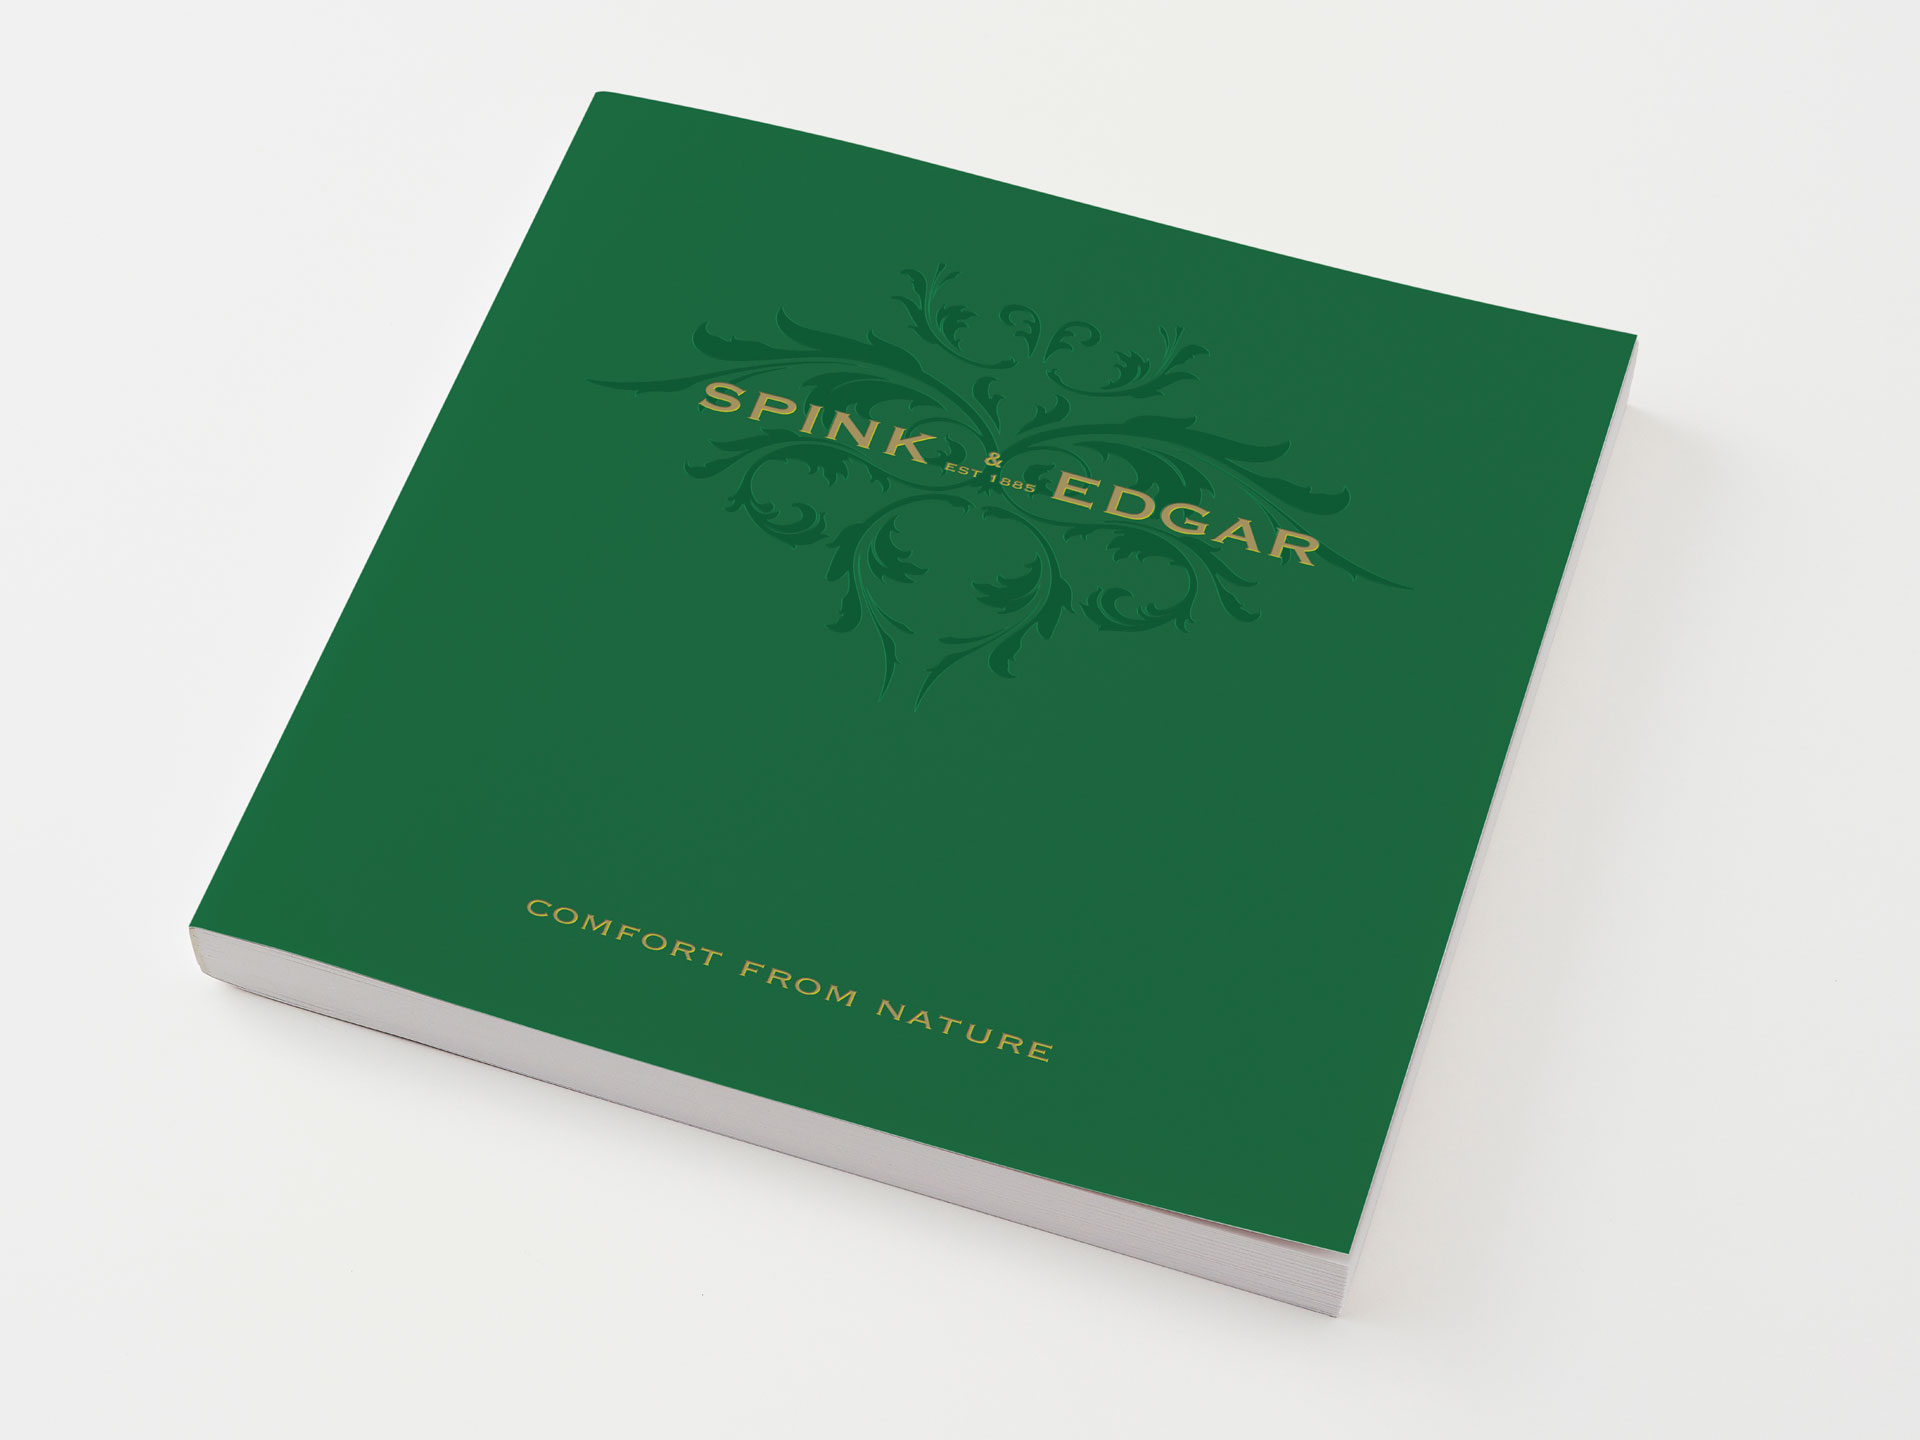 Spink & Edgar brochure cover